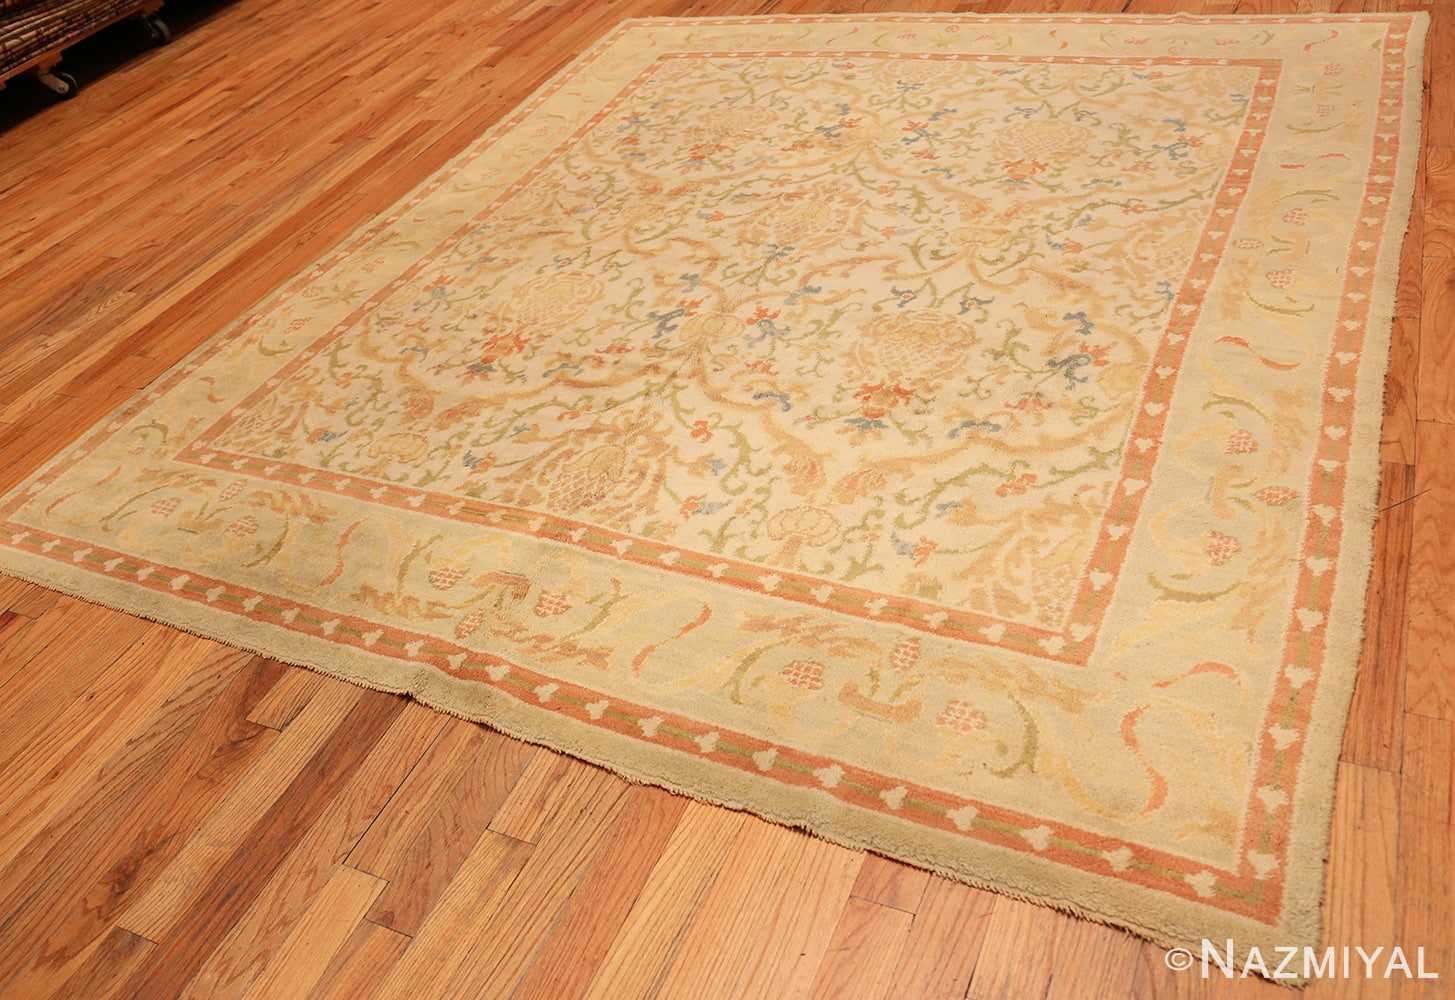 Full Vintage Spanish rug 46975 by Nazmiyal